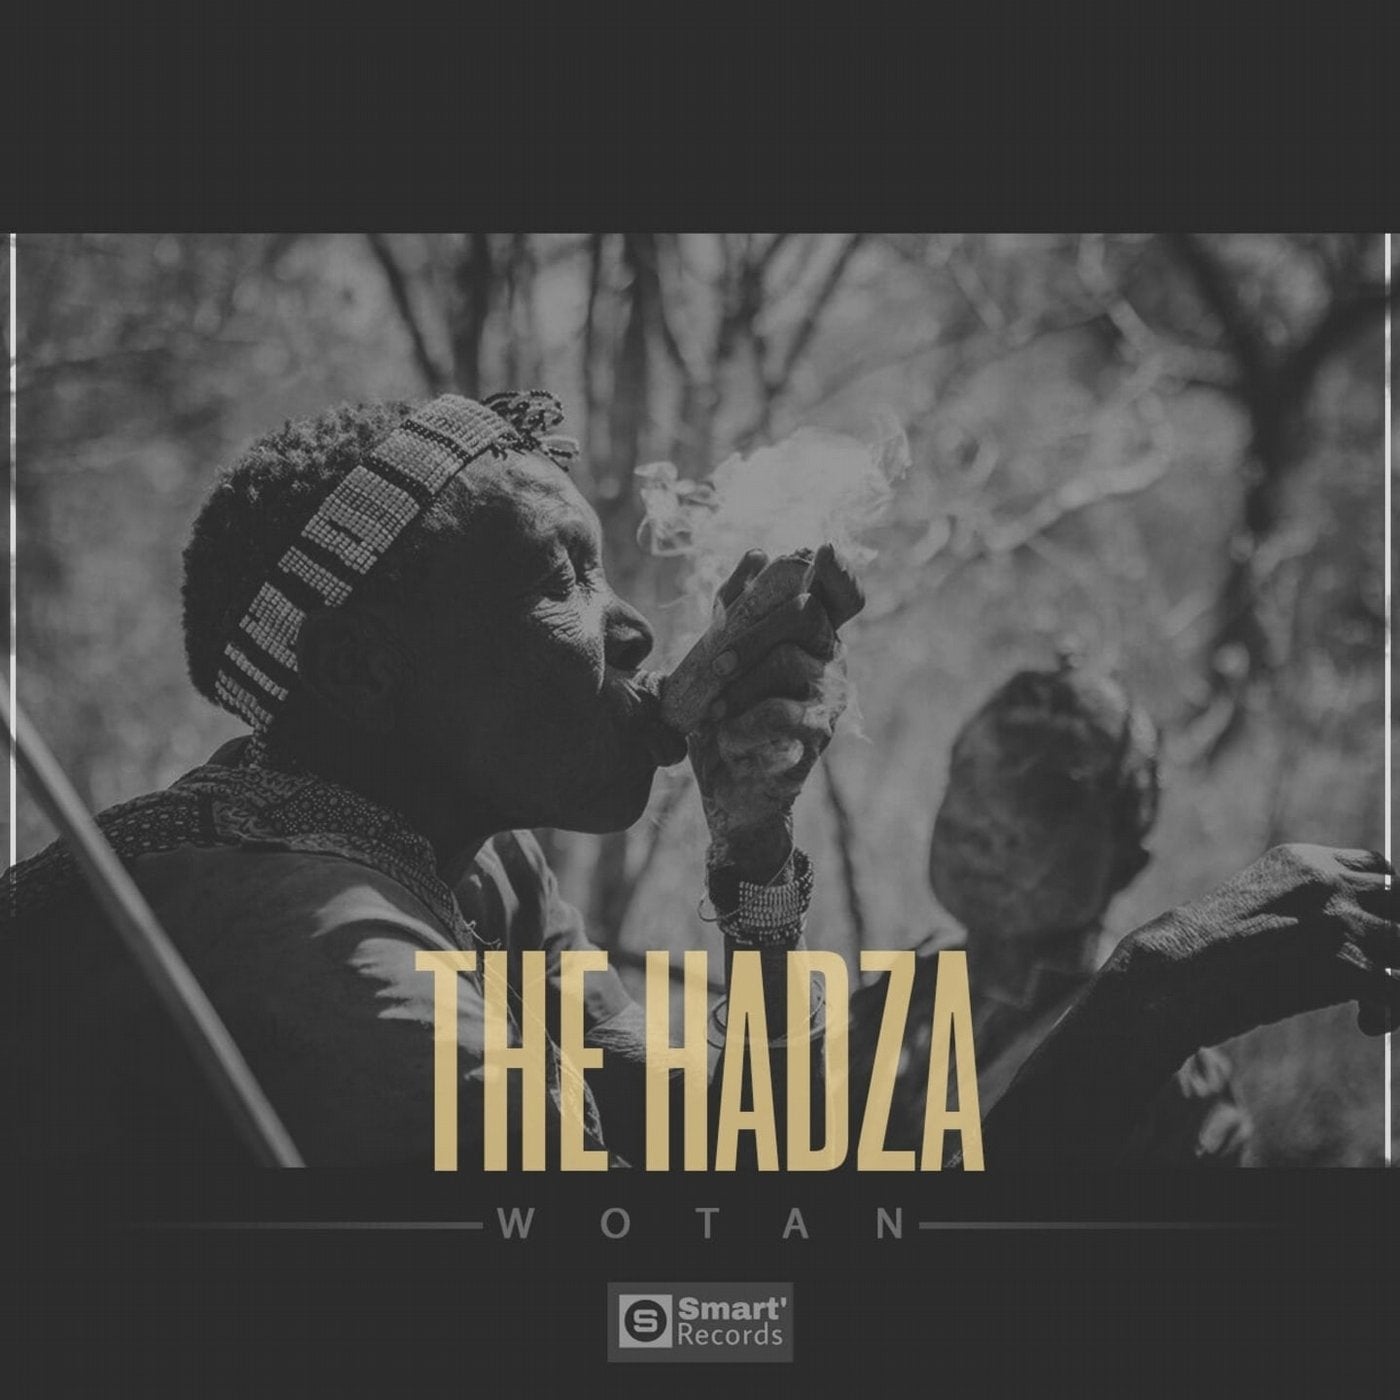 The Hadza